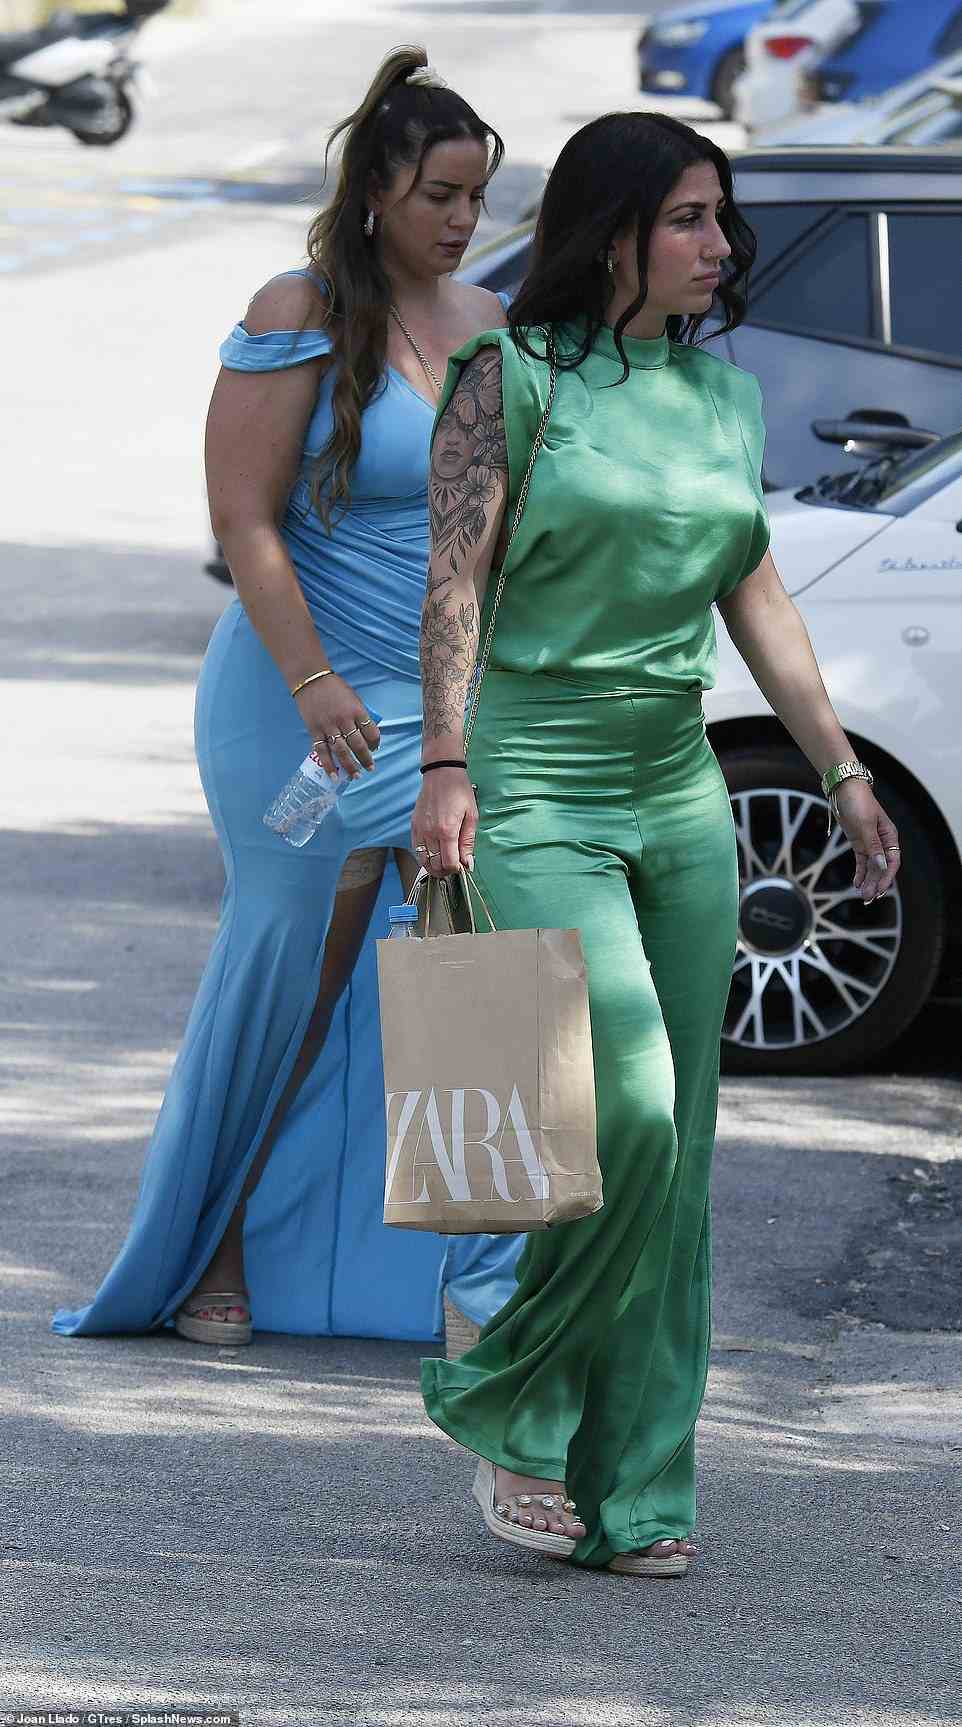 Ein Hochzeitsgast in einem eleganten, ärmellosen Katzenanzug aus grünem Satin und mit Keilabsatz, der eine Zara-Tasche trägt, betritt die Kulisse